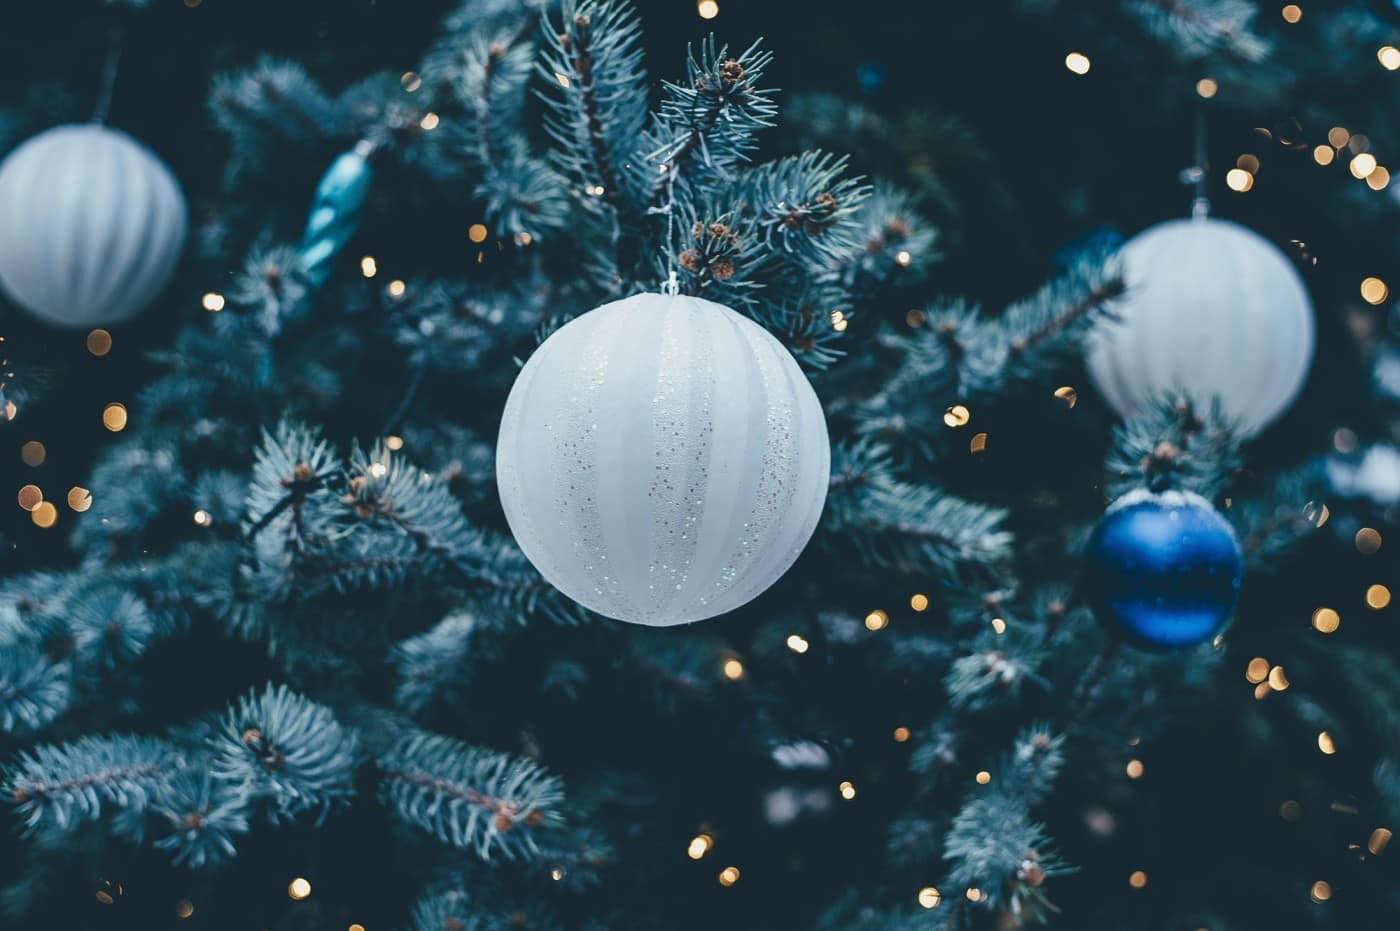 The 8 Best Christmas Activities in DFW